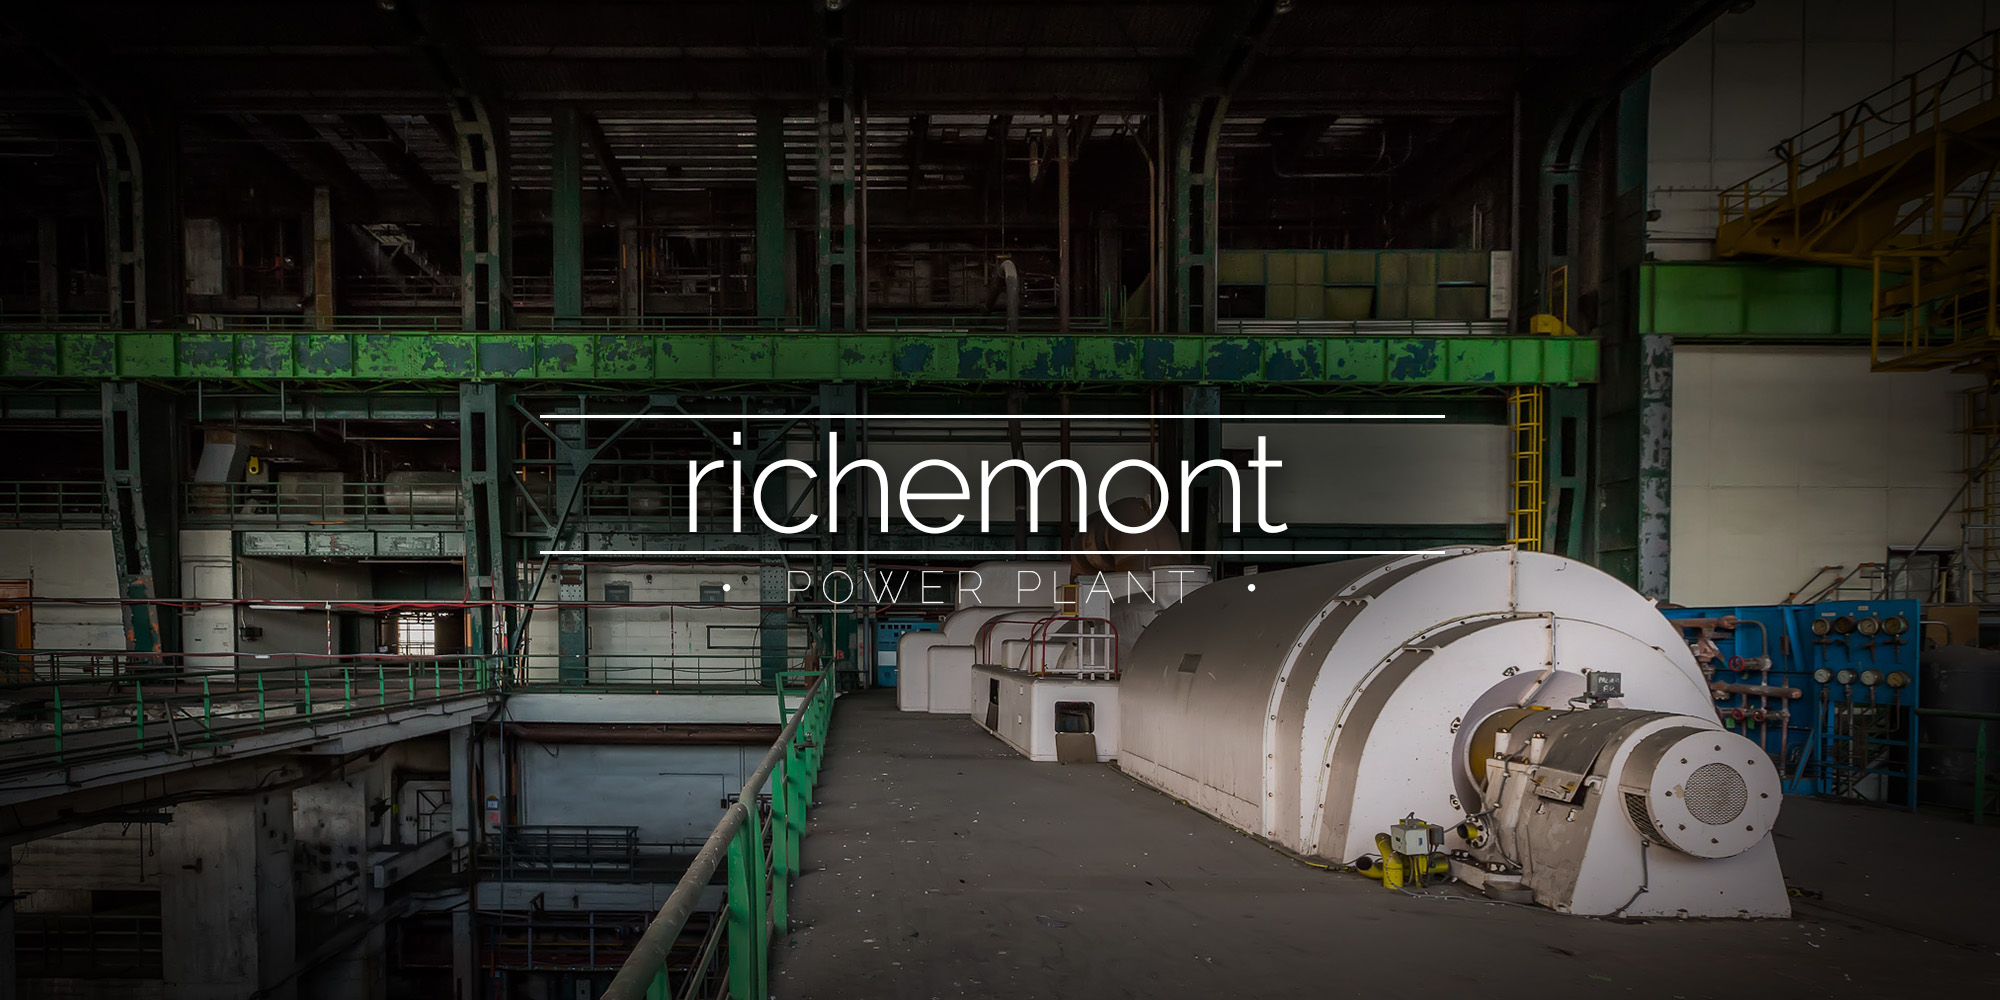 Richemont Power Plant, France